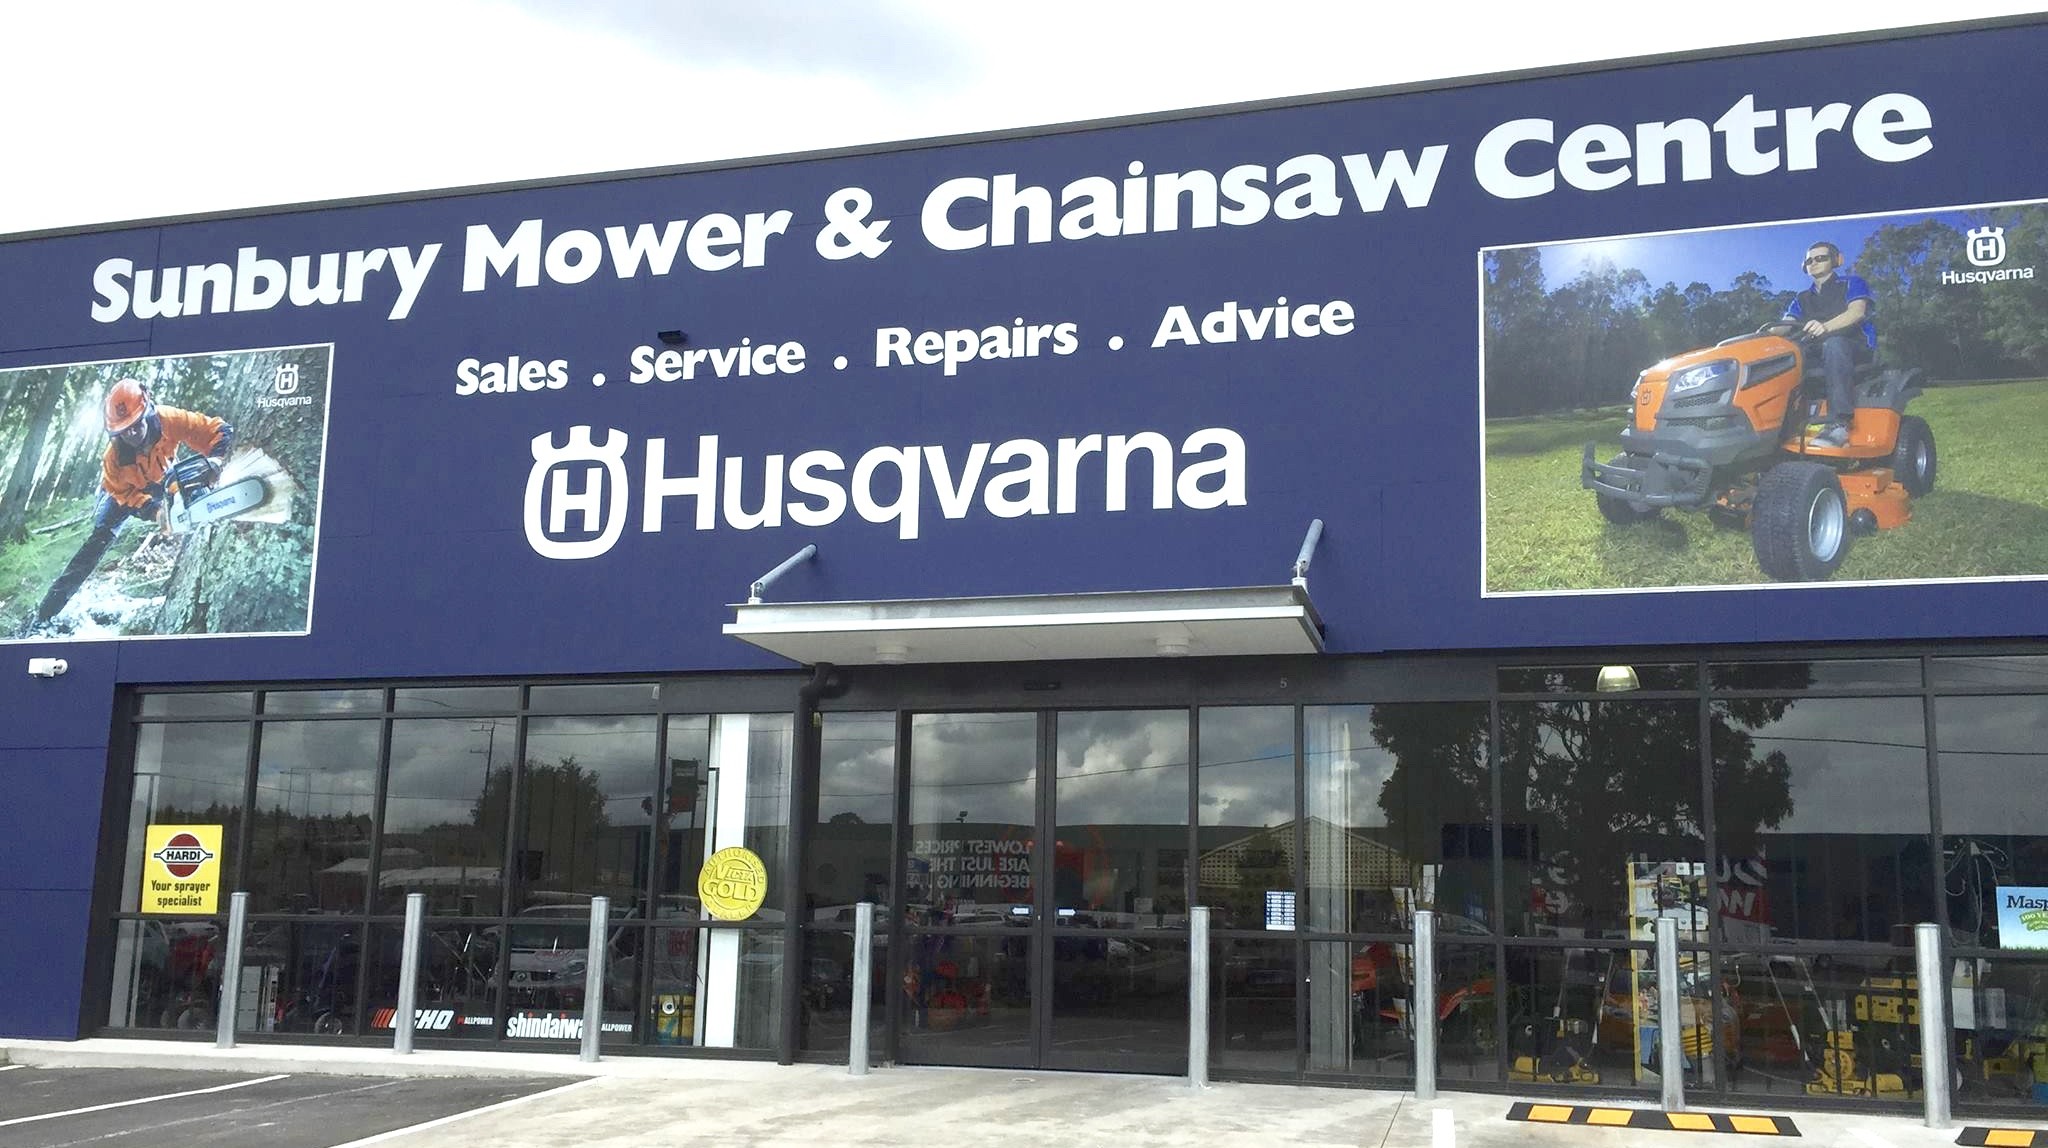 Sunbury Mower & Chainsaw Centre